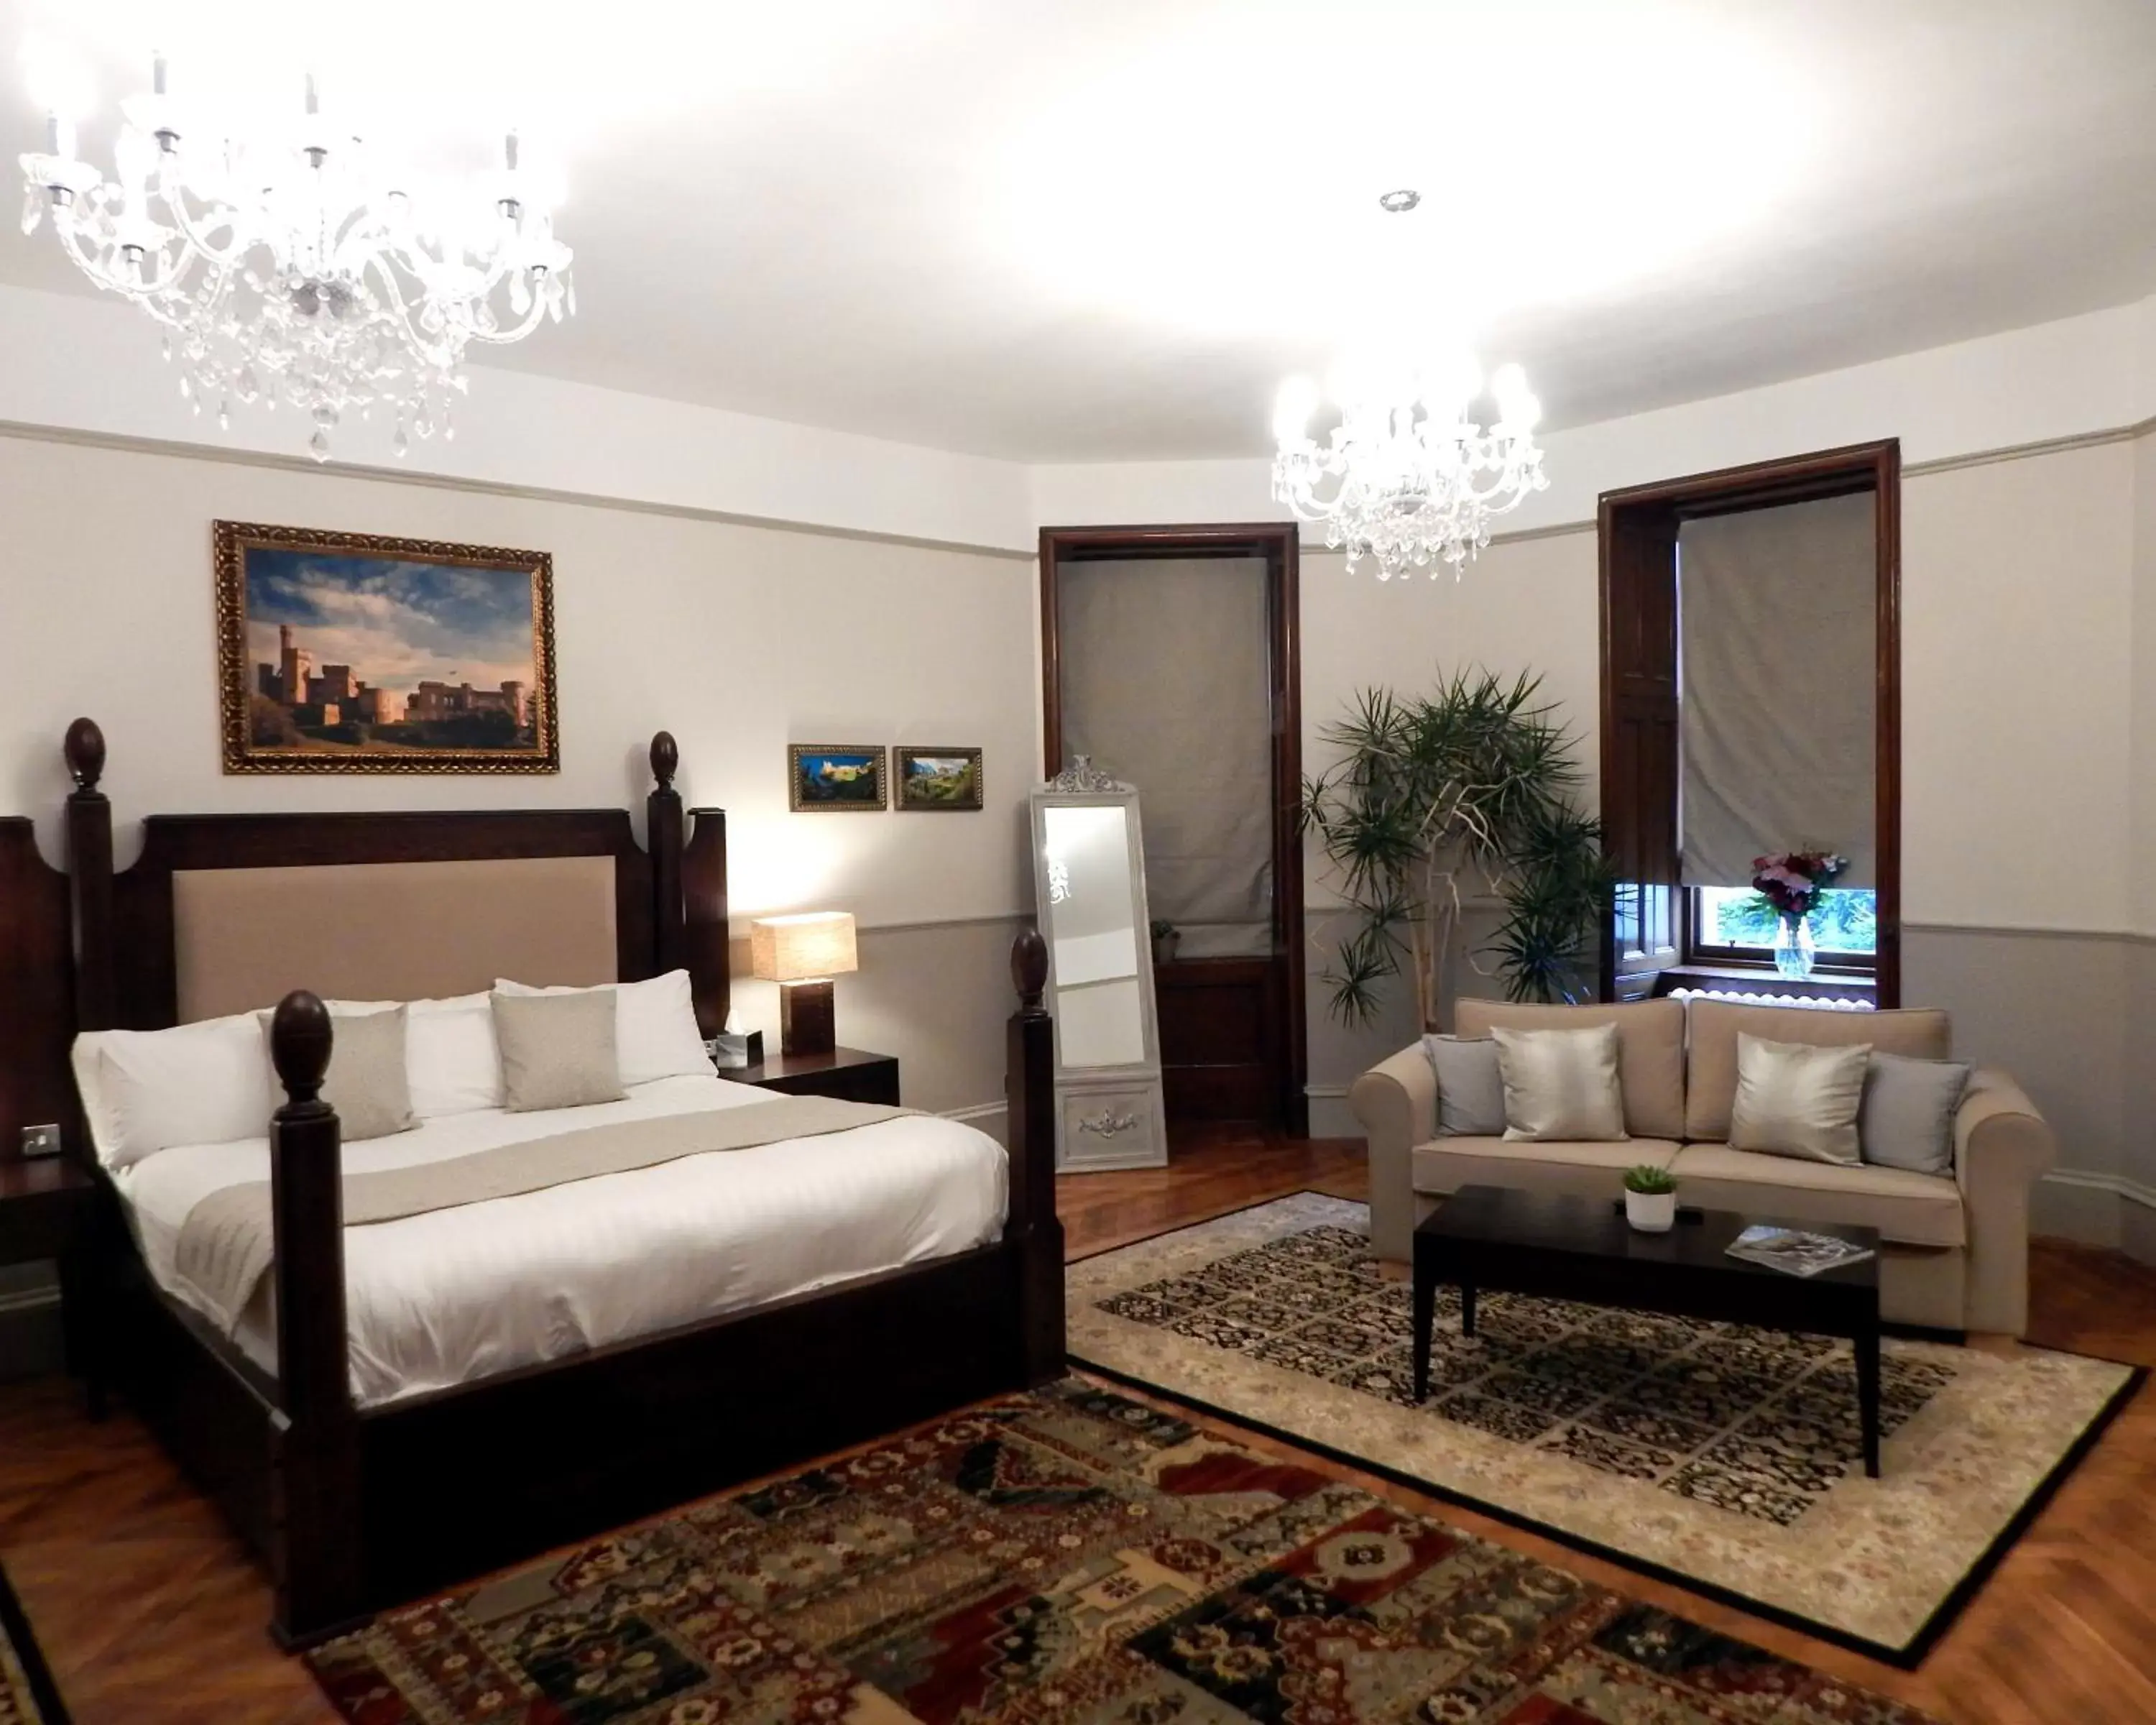 Bedroom in Tulloch Castle Hotel ‘A Bespoke Hotel’